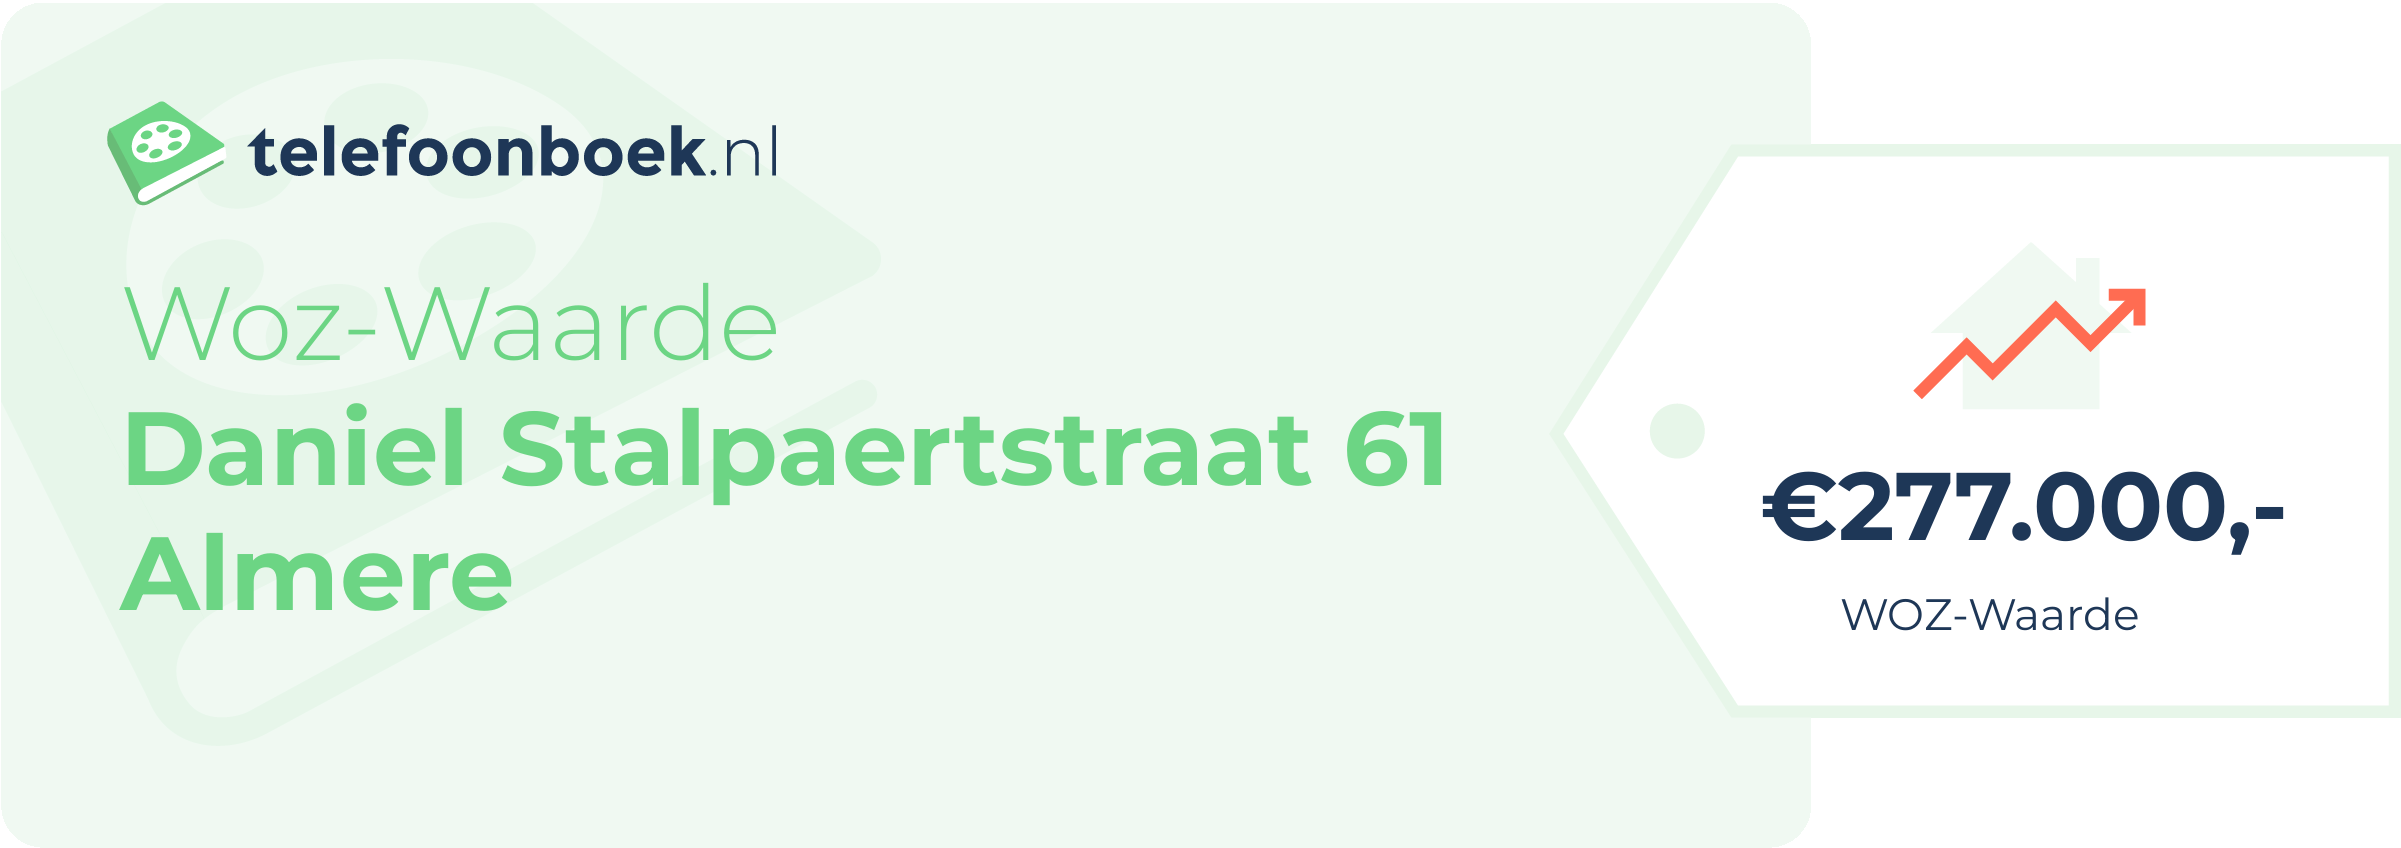 WOZ-waarde Daniel Stalpaertstraat 61 Almere